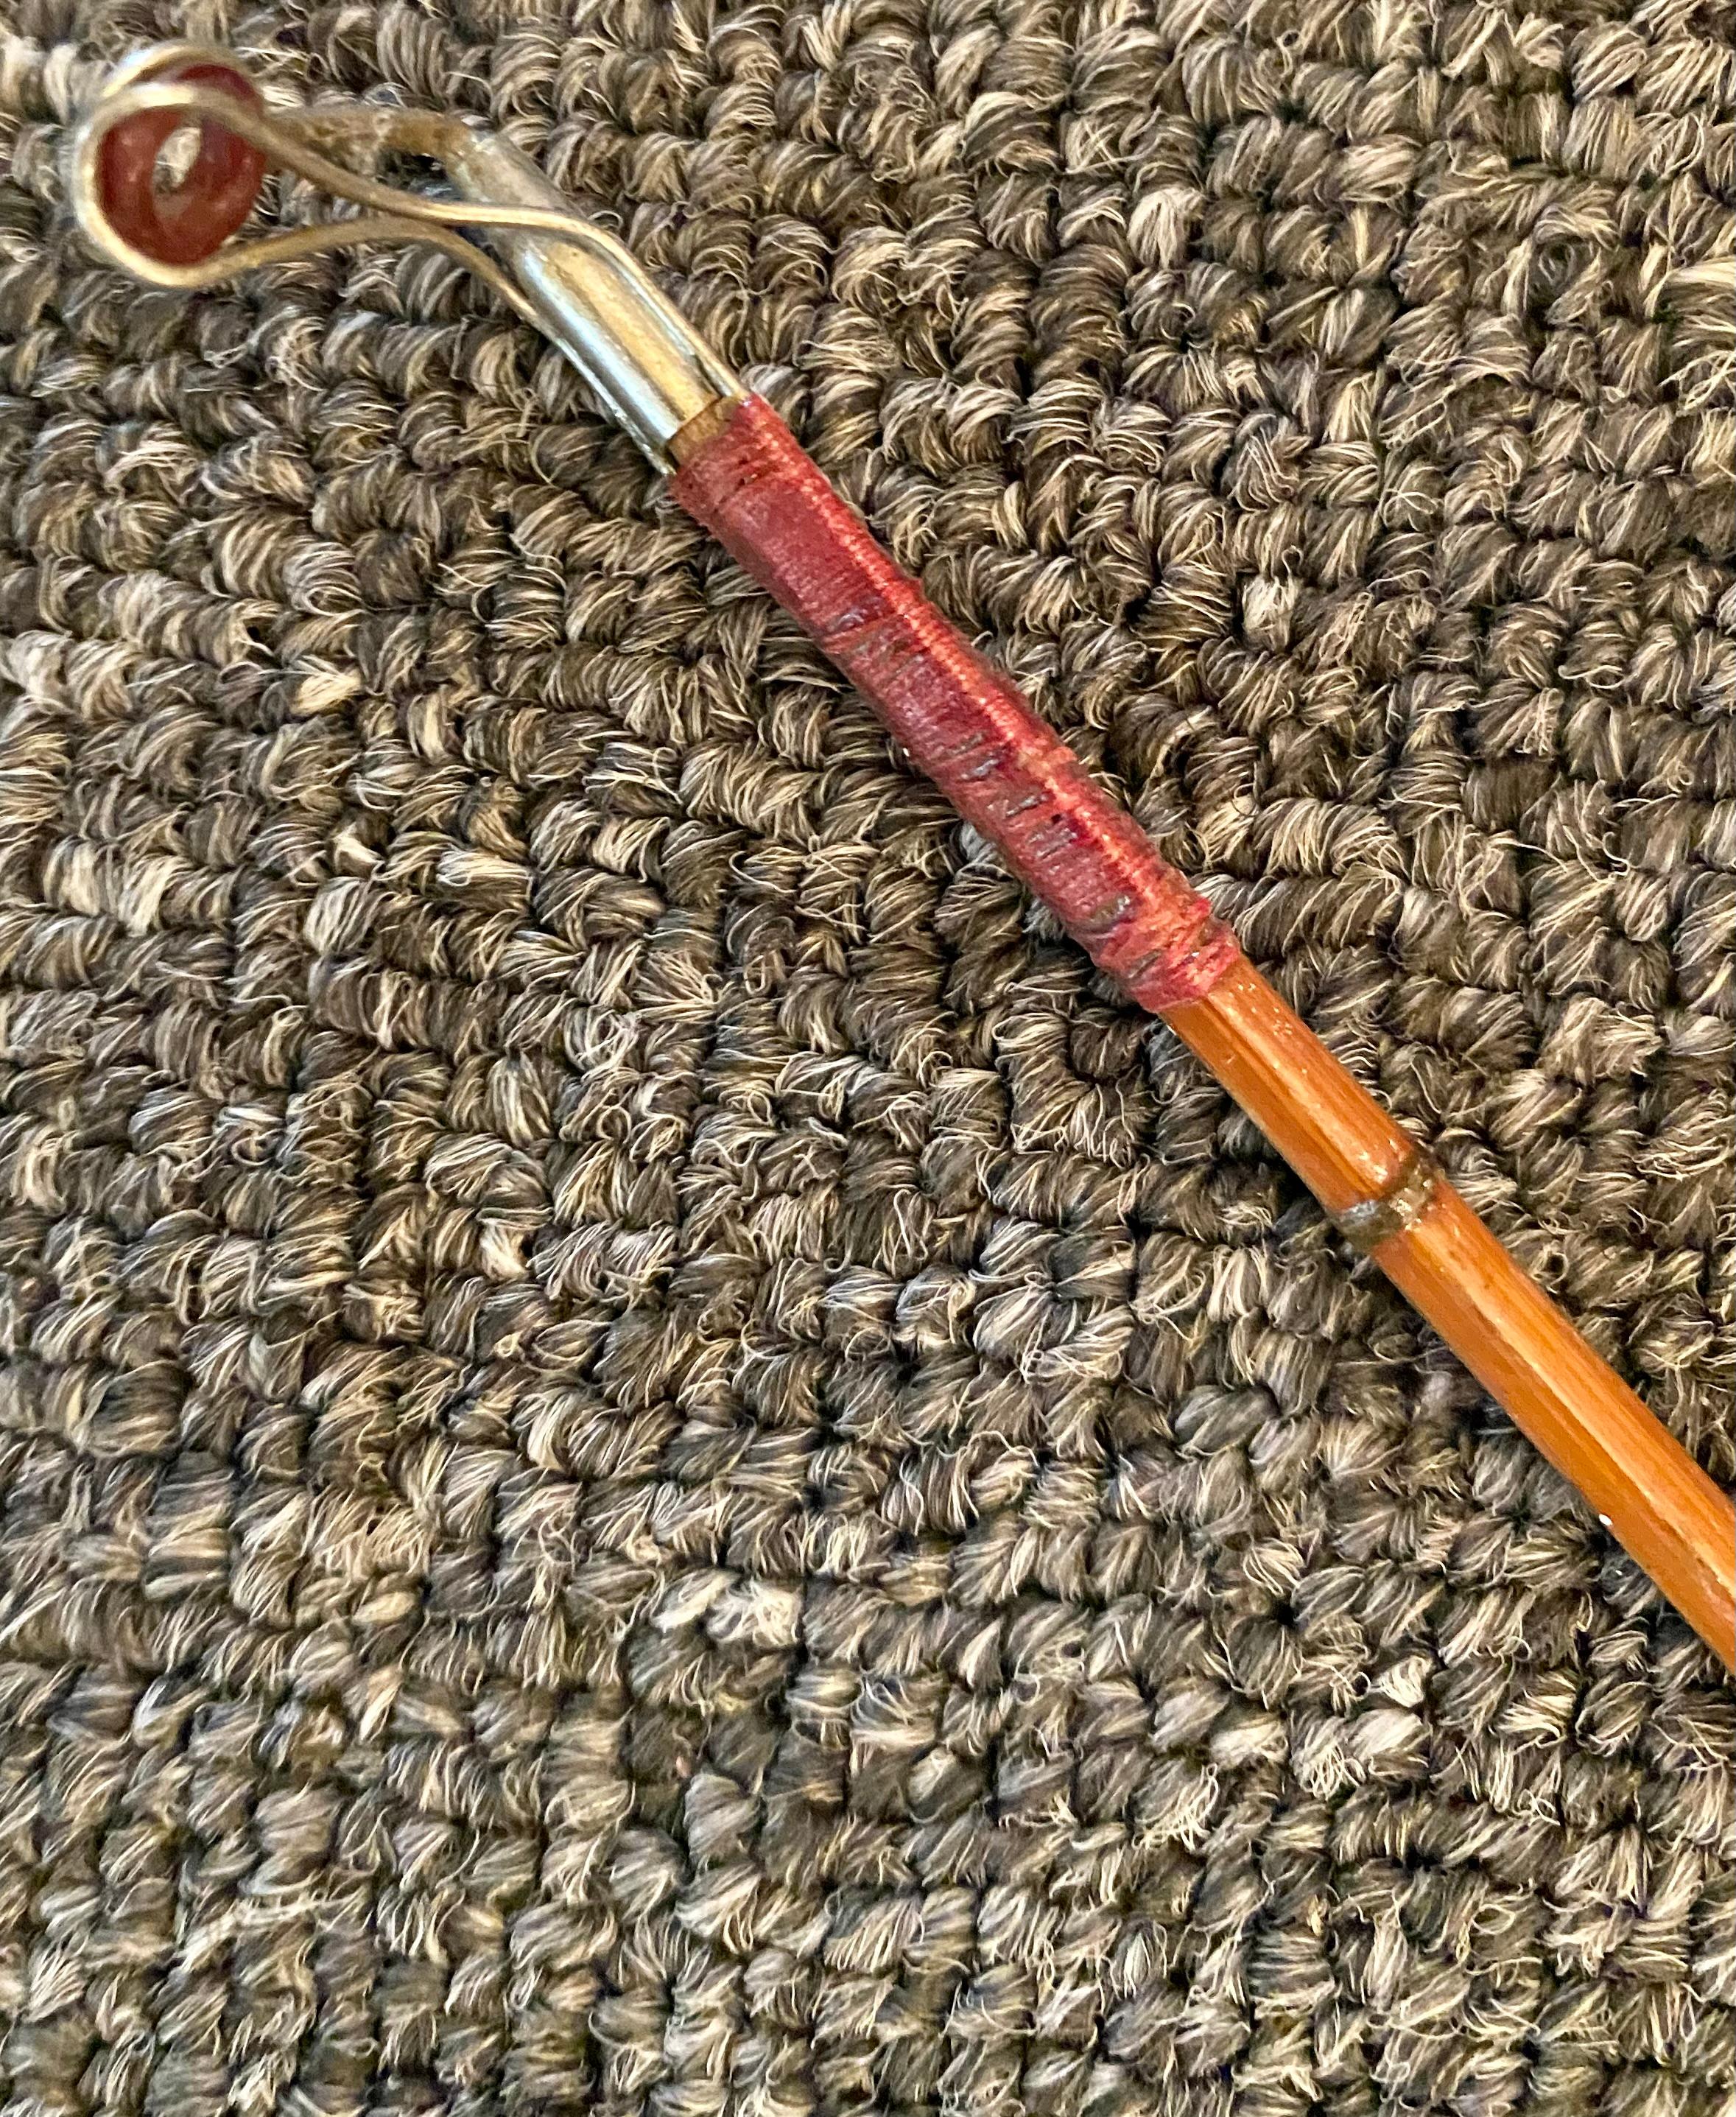 1920s fishing rod